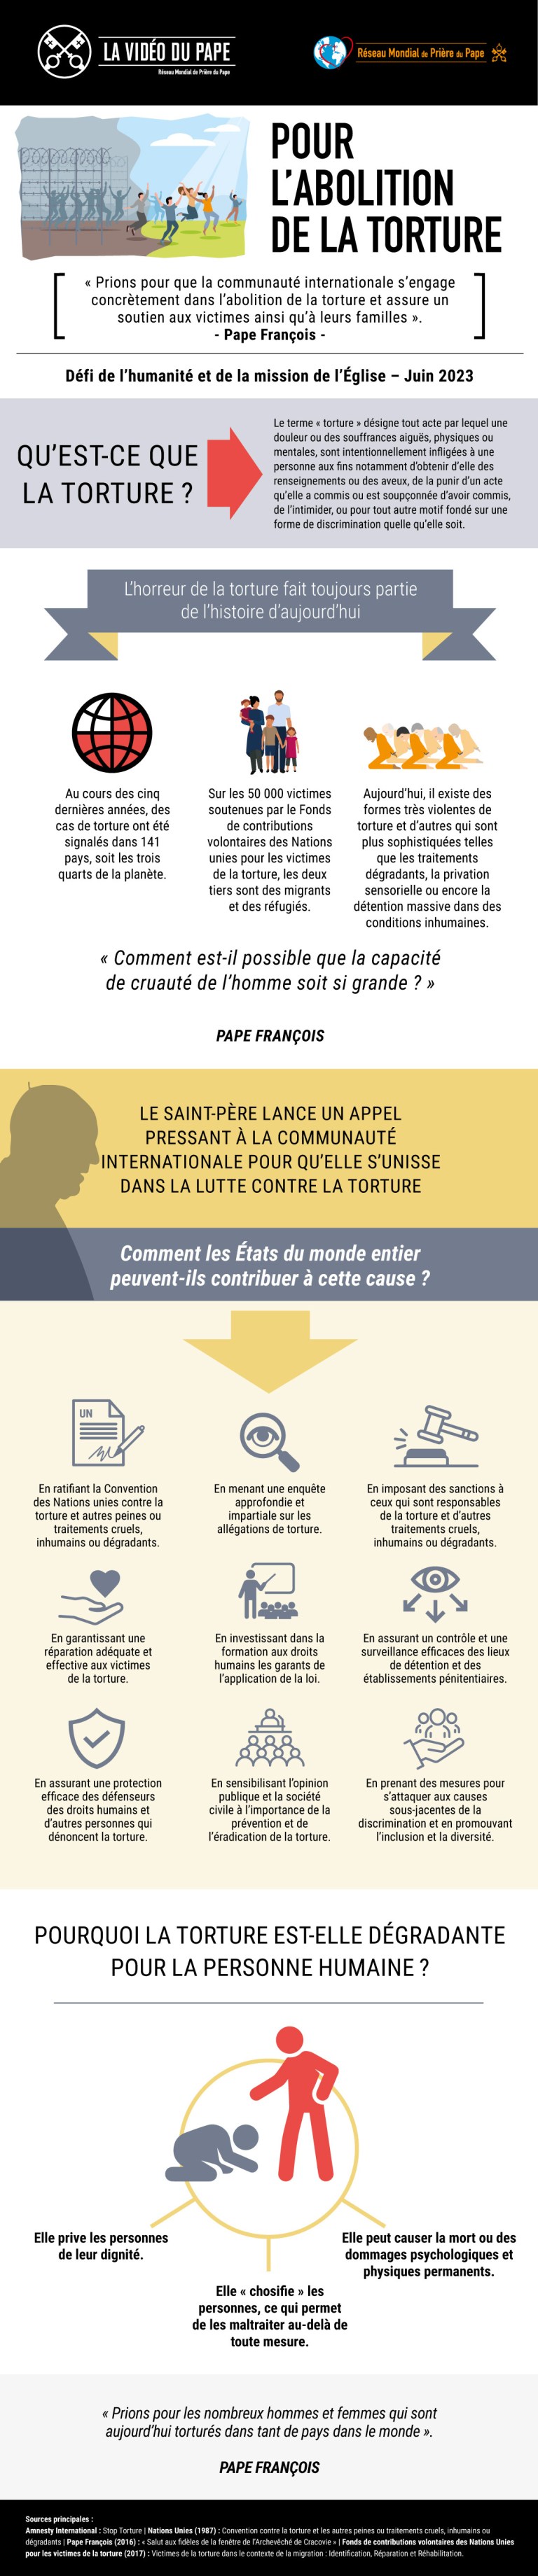 LE PAPE FRANÇOIS APPELLE À PRIER POUR L’ABOLITION DE LA TORTURE Infographic_-_TPV_6_2023_FR_-_Pour_labolition_de_la_torture